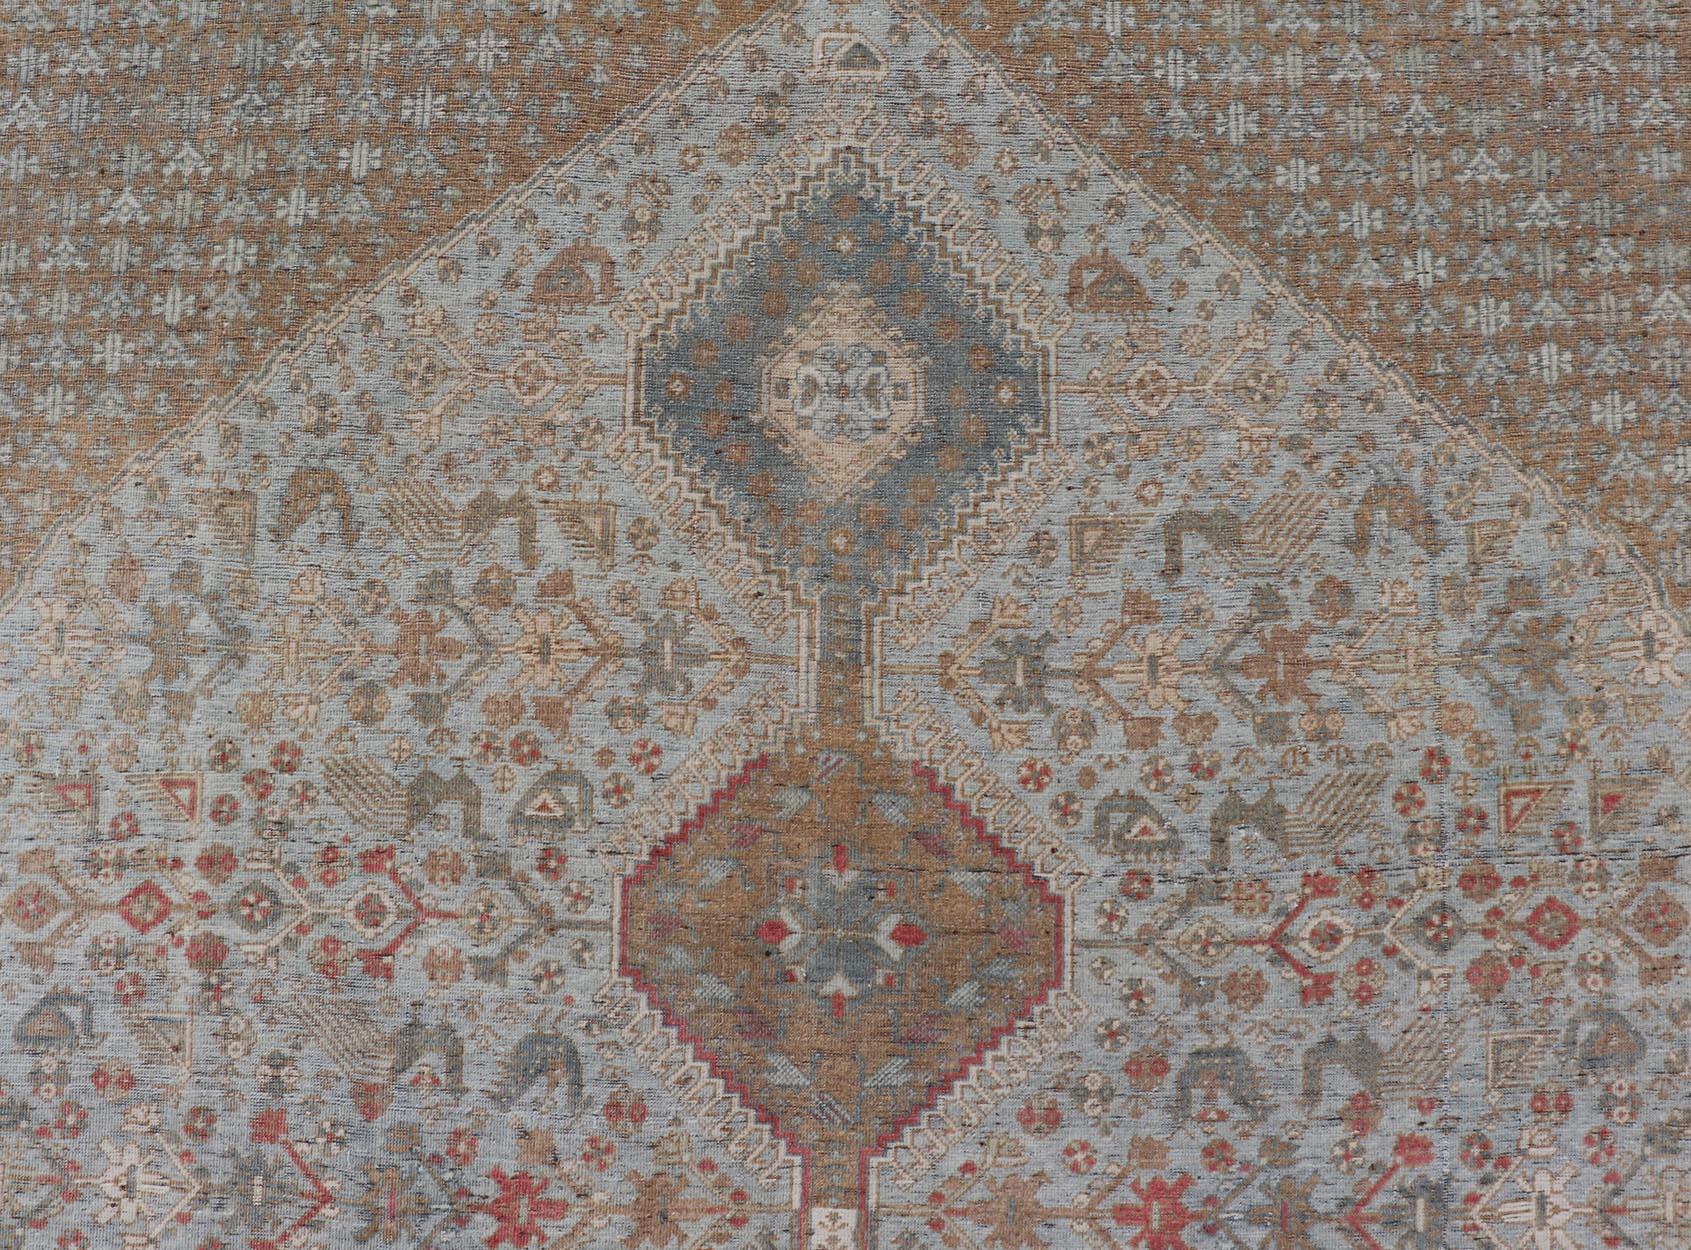  Antiker persischer Qashgai-Stammesteppich mit gestapeltem Teppich  Diamantmedaillons und Stammesmotiven. 

Keivan Woven Arts / Teppich TU-MTU-360, Herkunftsland / Art: Iran / Gaschgai, um 1910.

Maße: 5'6 x 7'10   

   Antiker persischer